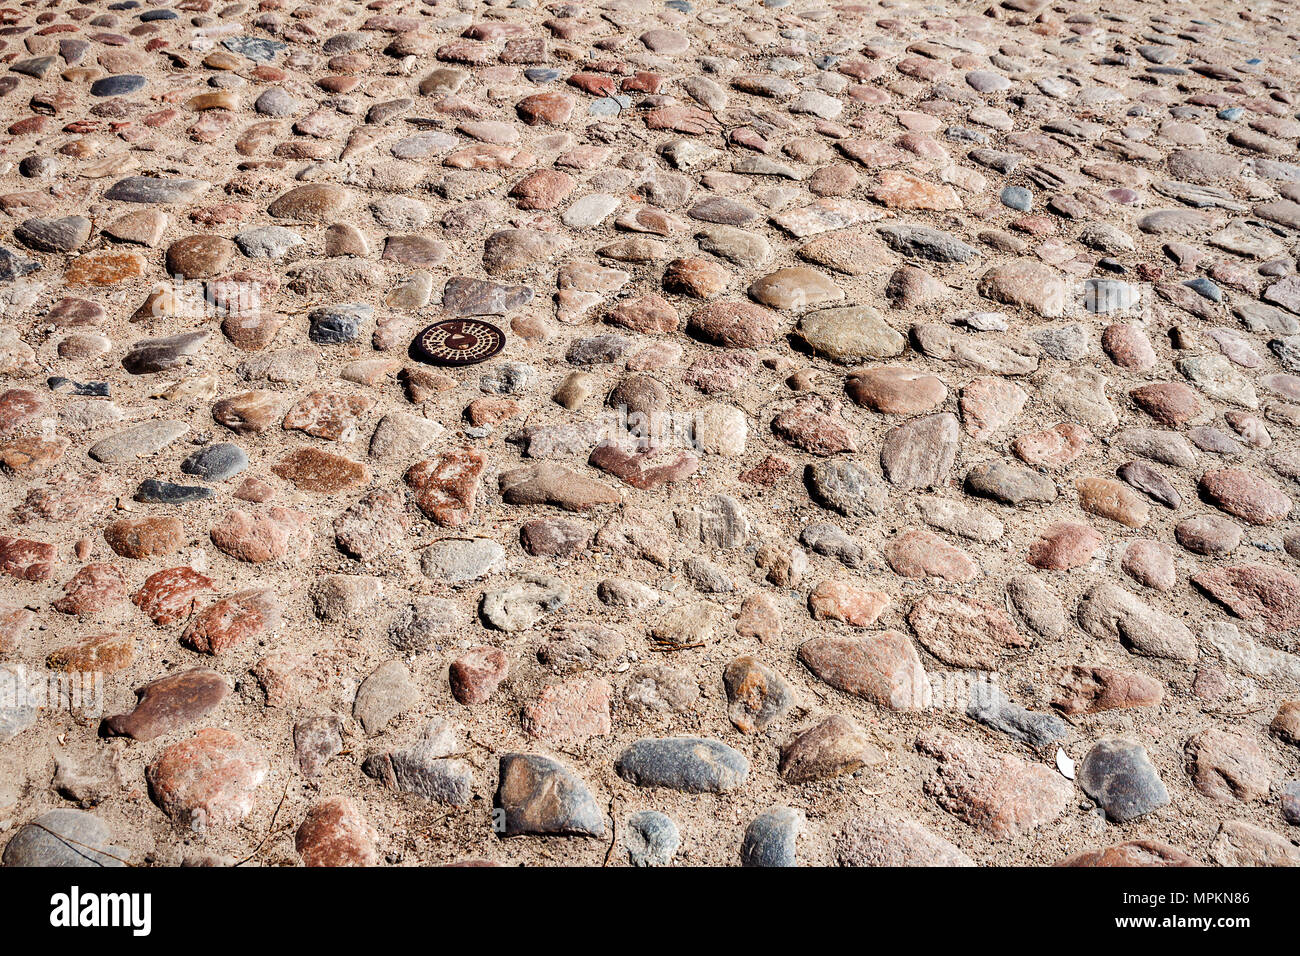 Natürliche grobschlächtige Steinboden Textur Hintergrund. Oberfläche der alten gepflasterten Straße. Stockfoto